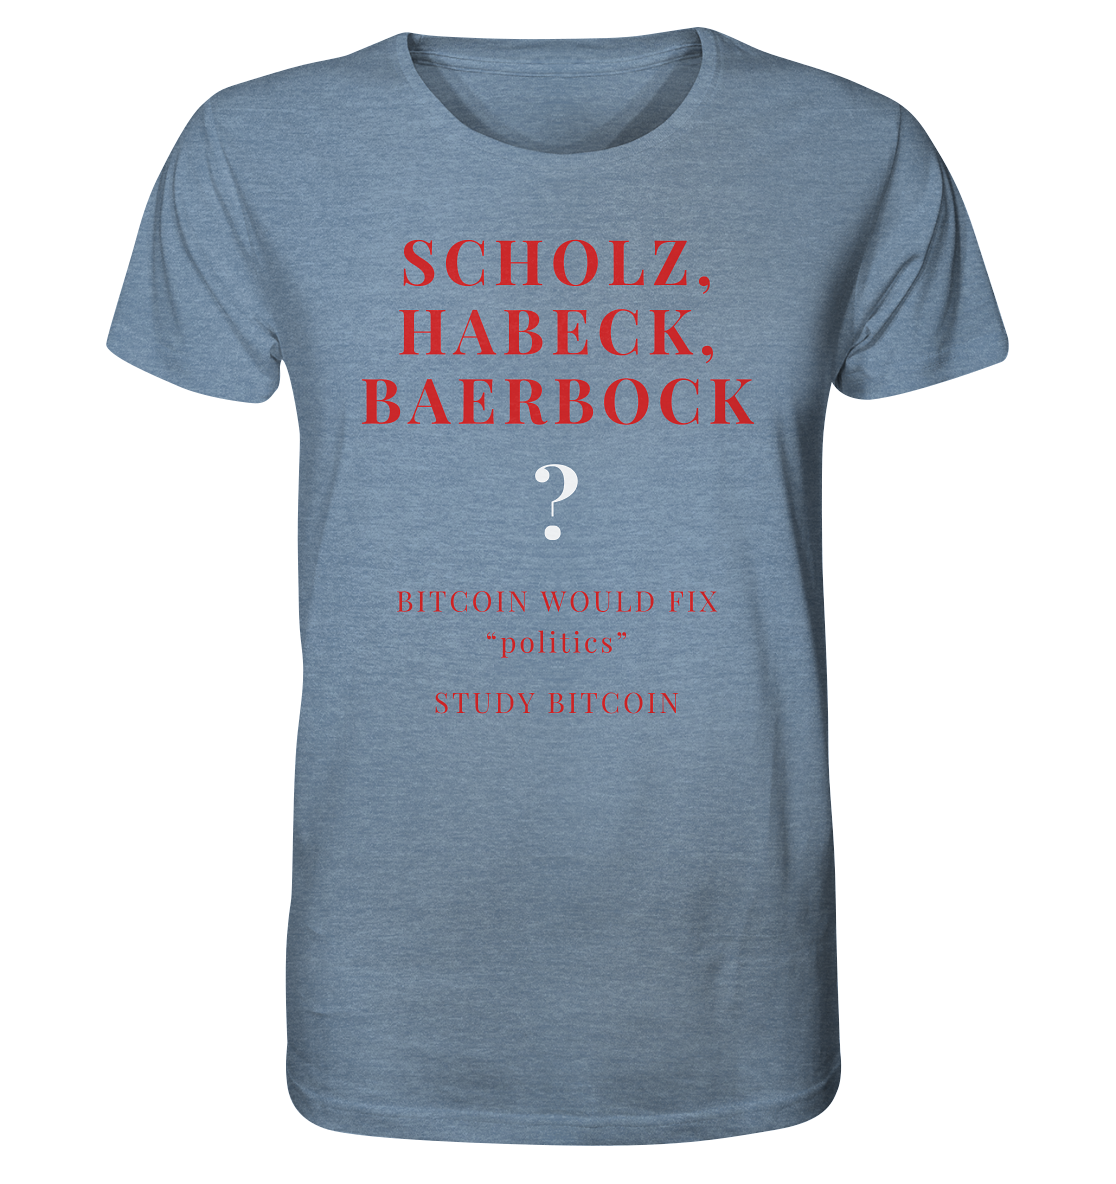 SCHOLZ, HABECK, BAERBOCK ? BITCOIN WOULD FIX "politics" - STUDY BITCOIN  - Organic Shirt (meliert)